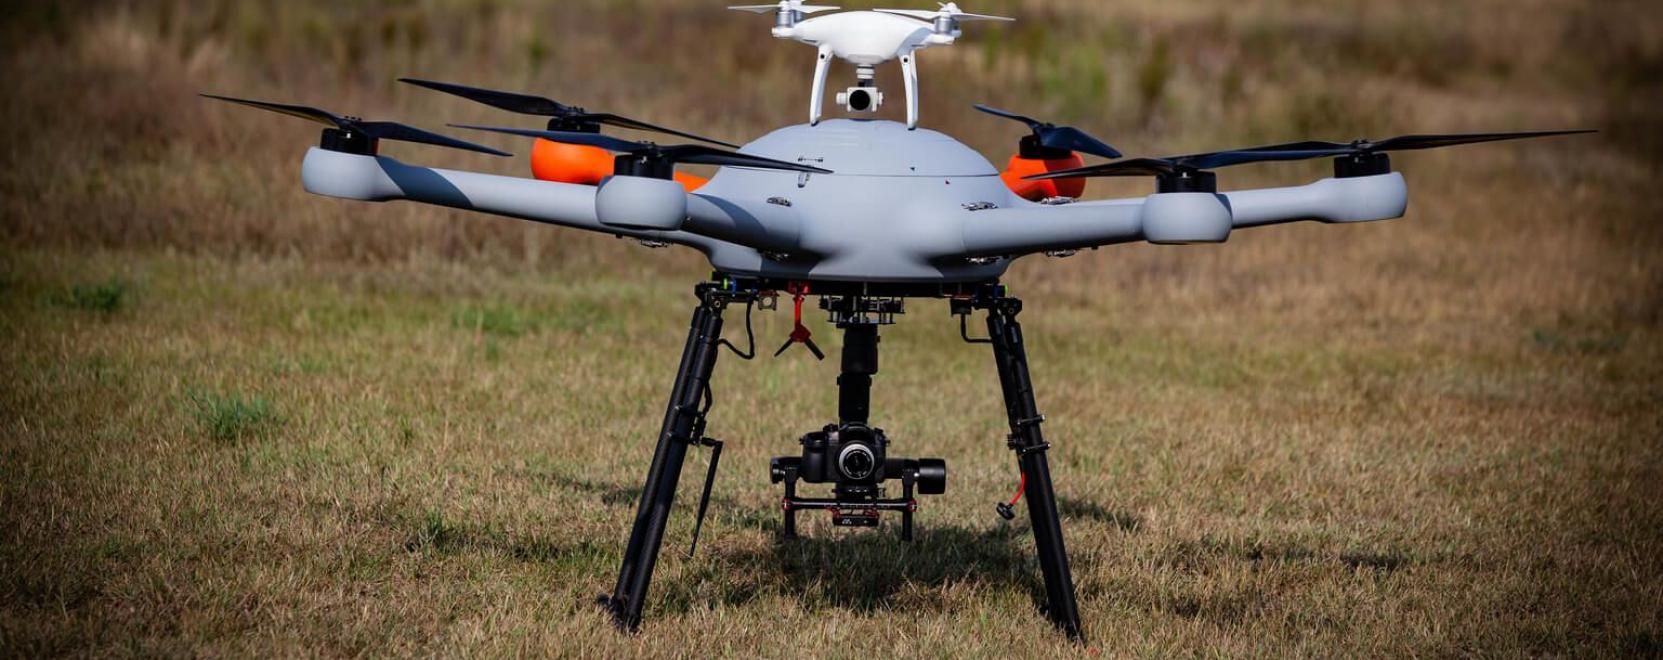 Drónfejlesztő cégbe vásárolta be magát a 4iG